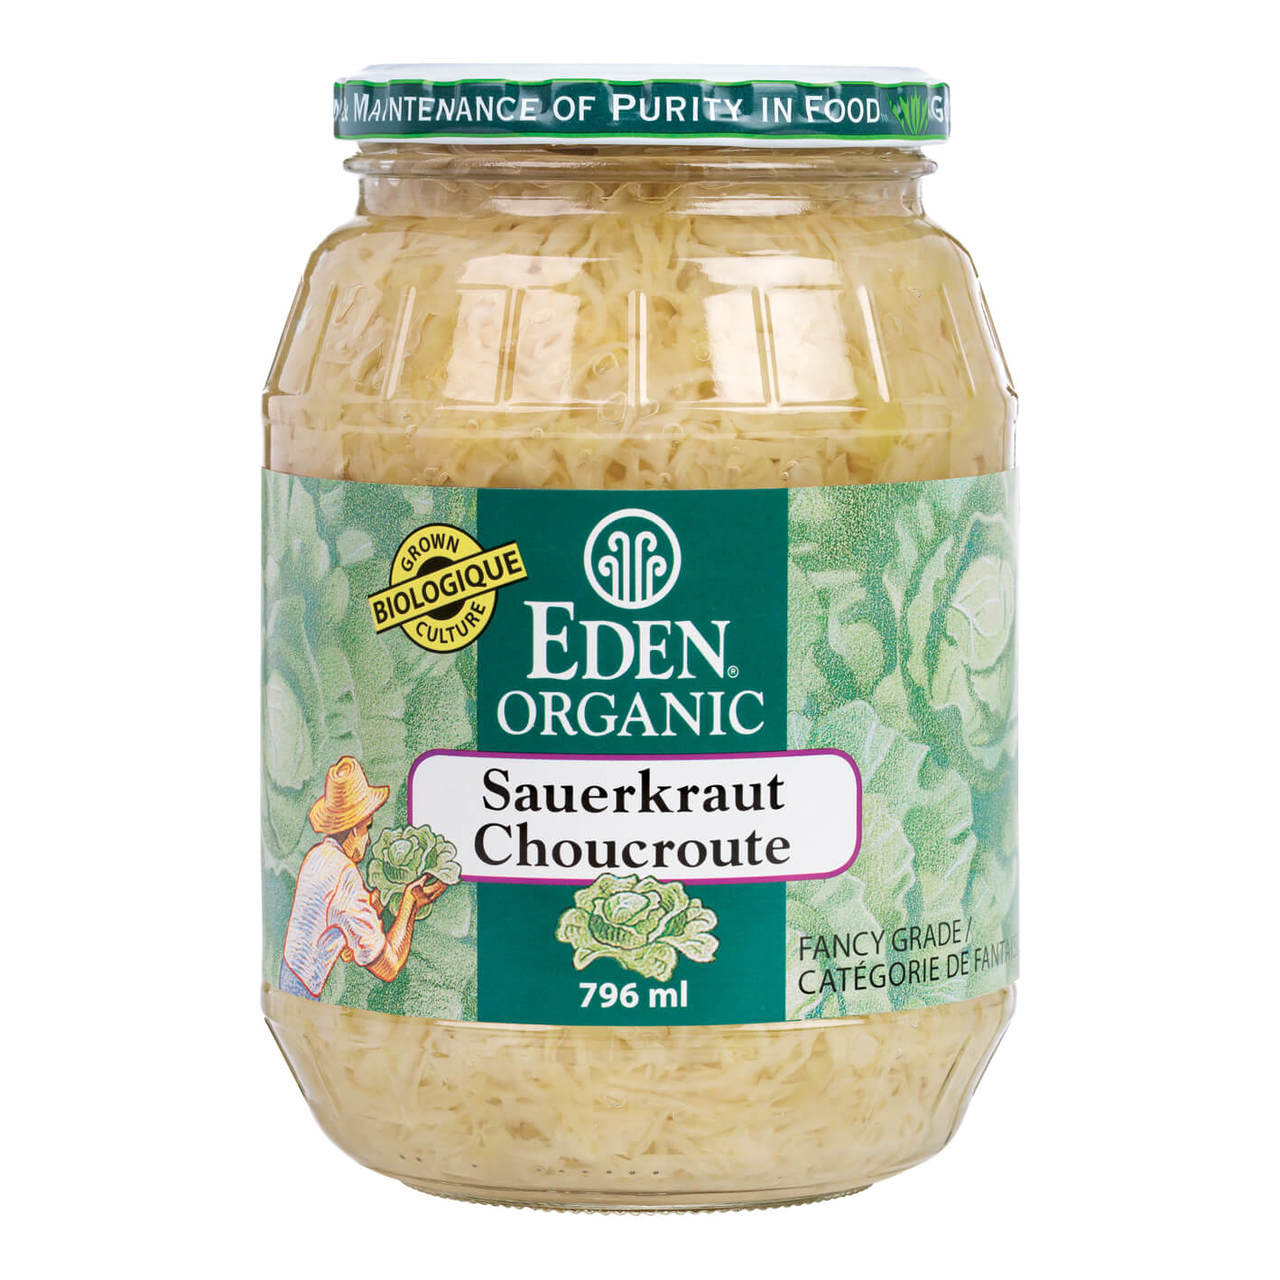 Eden Organic Sauerkraut (796ml) - Lifestyle Markets